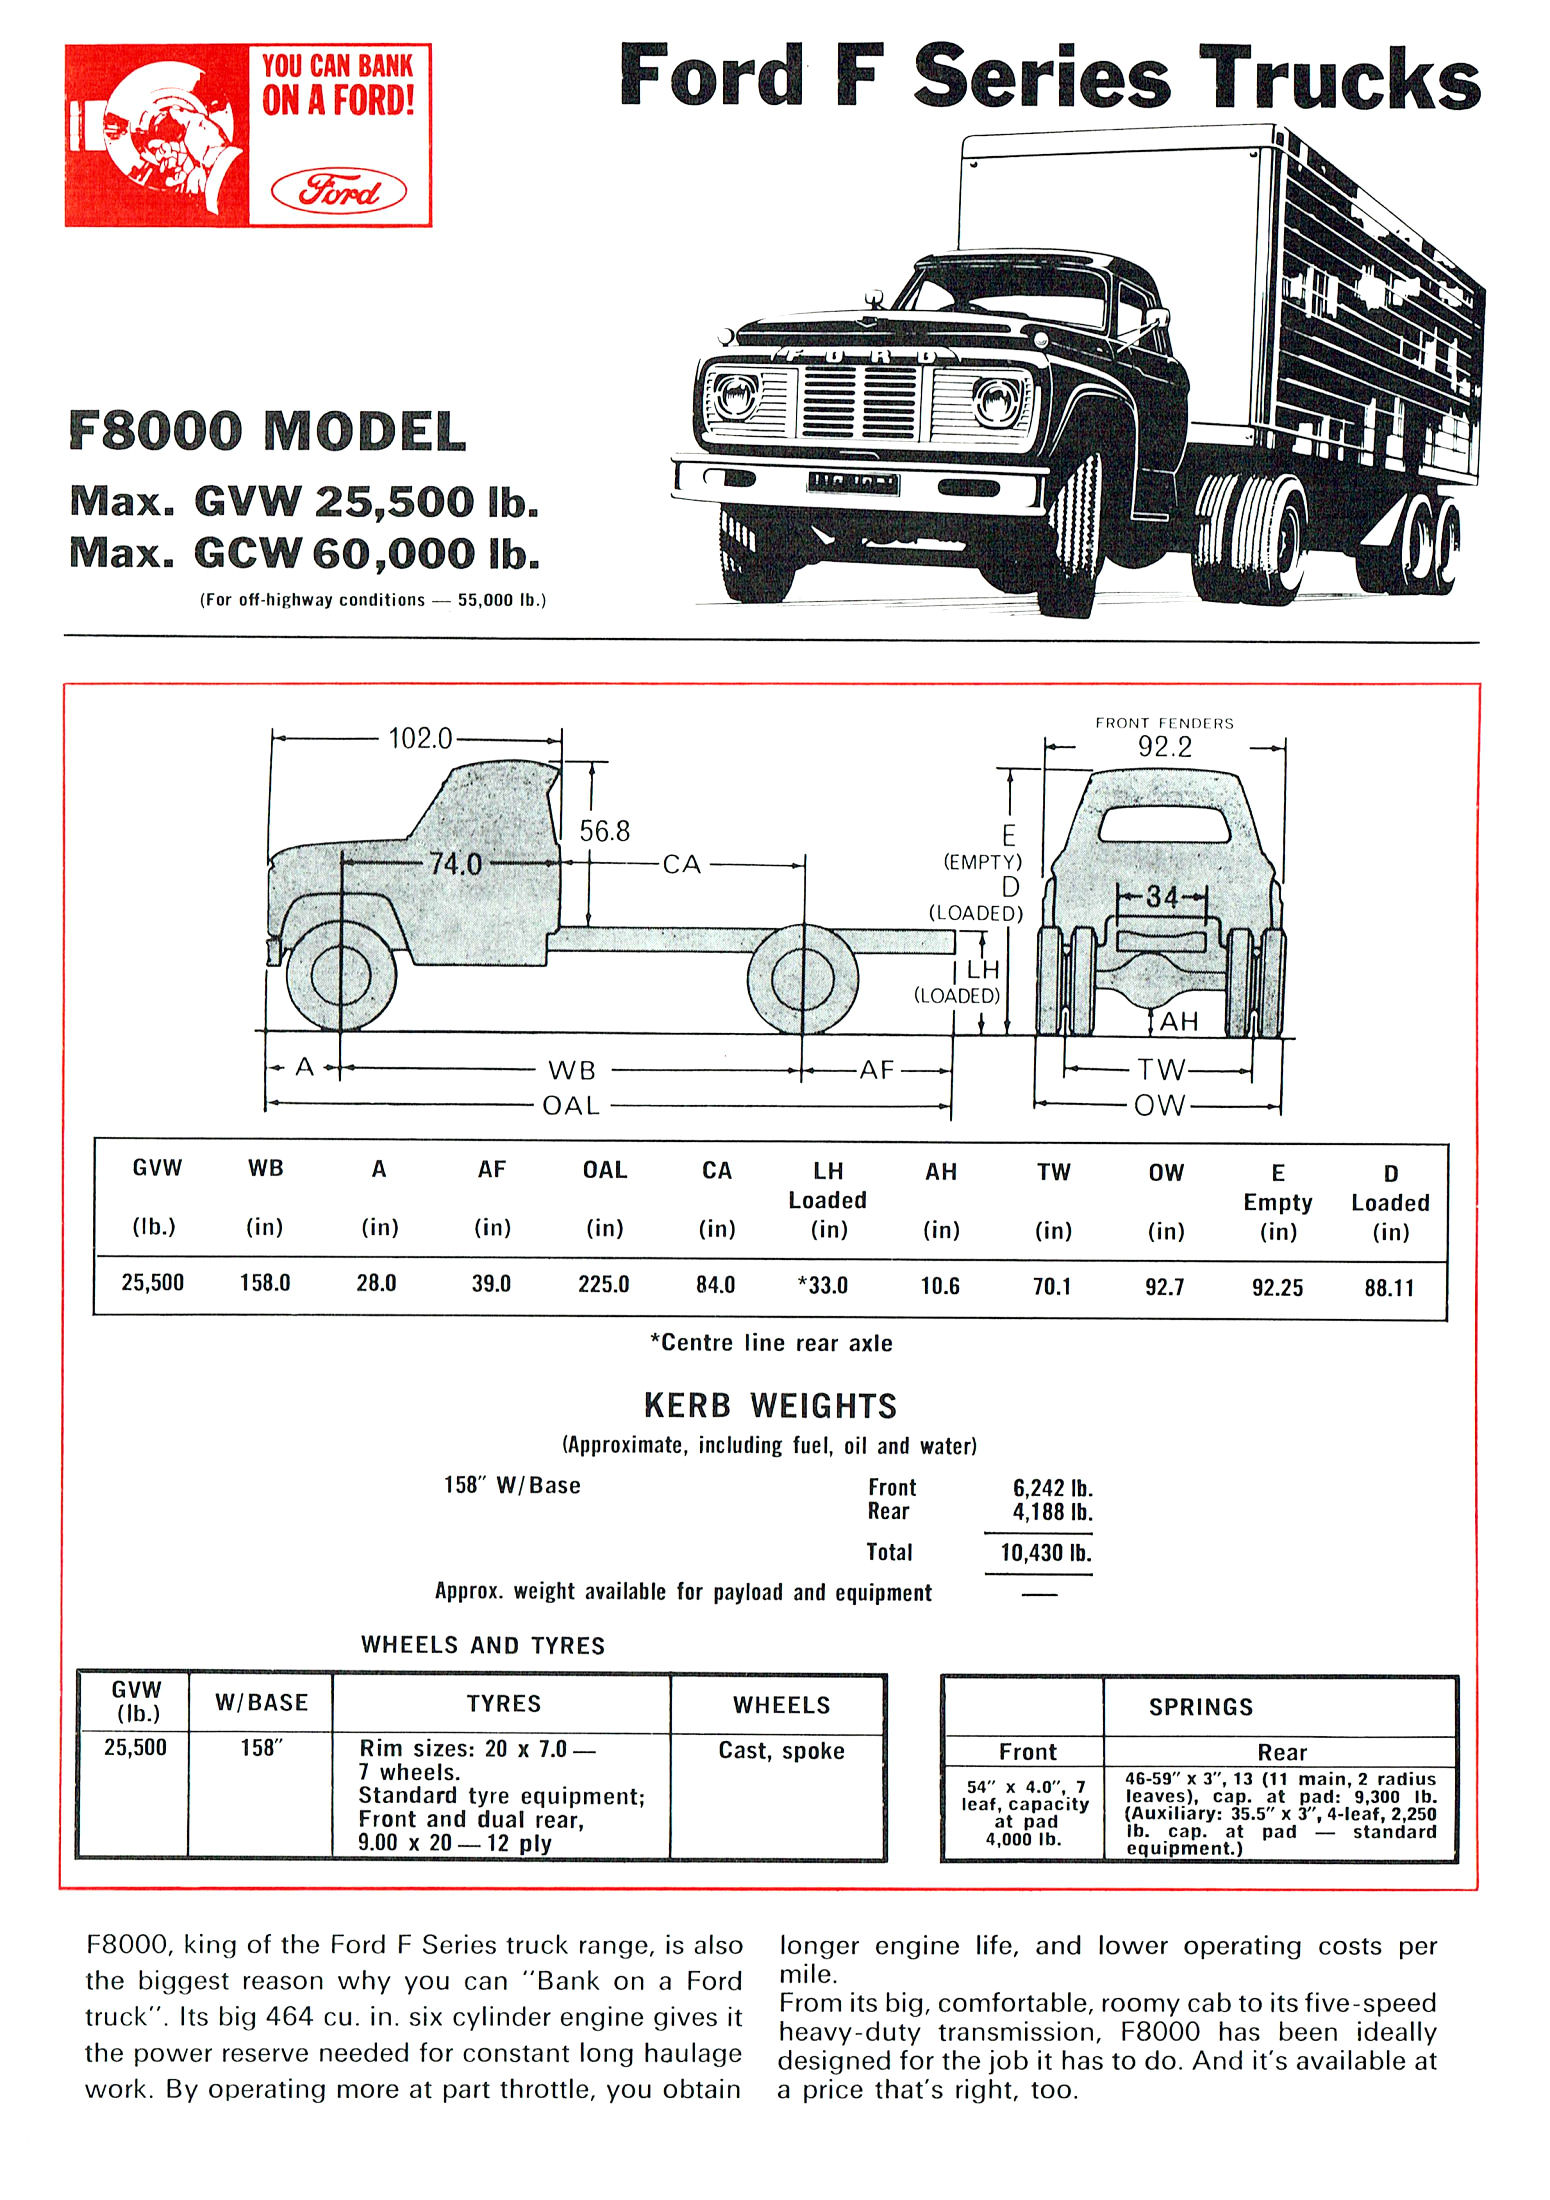 1968 Ford Trucks (Aus)-iF80a.jpg-2022-12-7 13.27.17